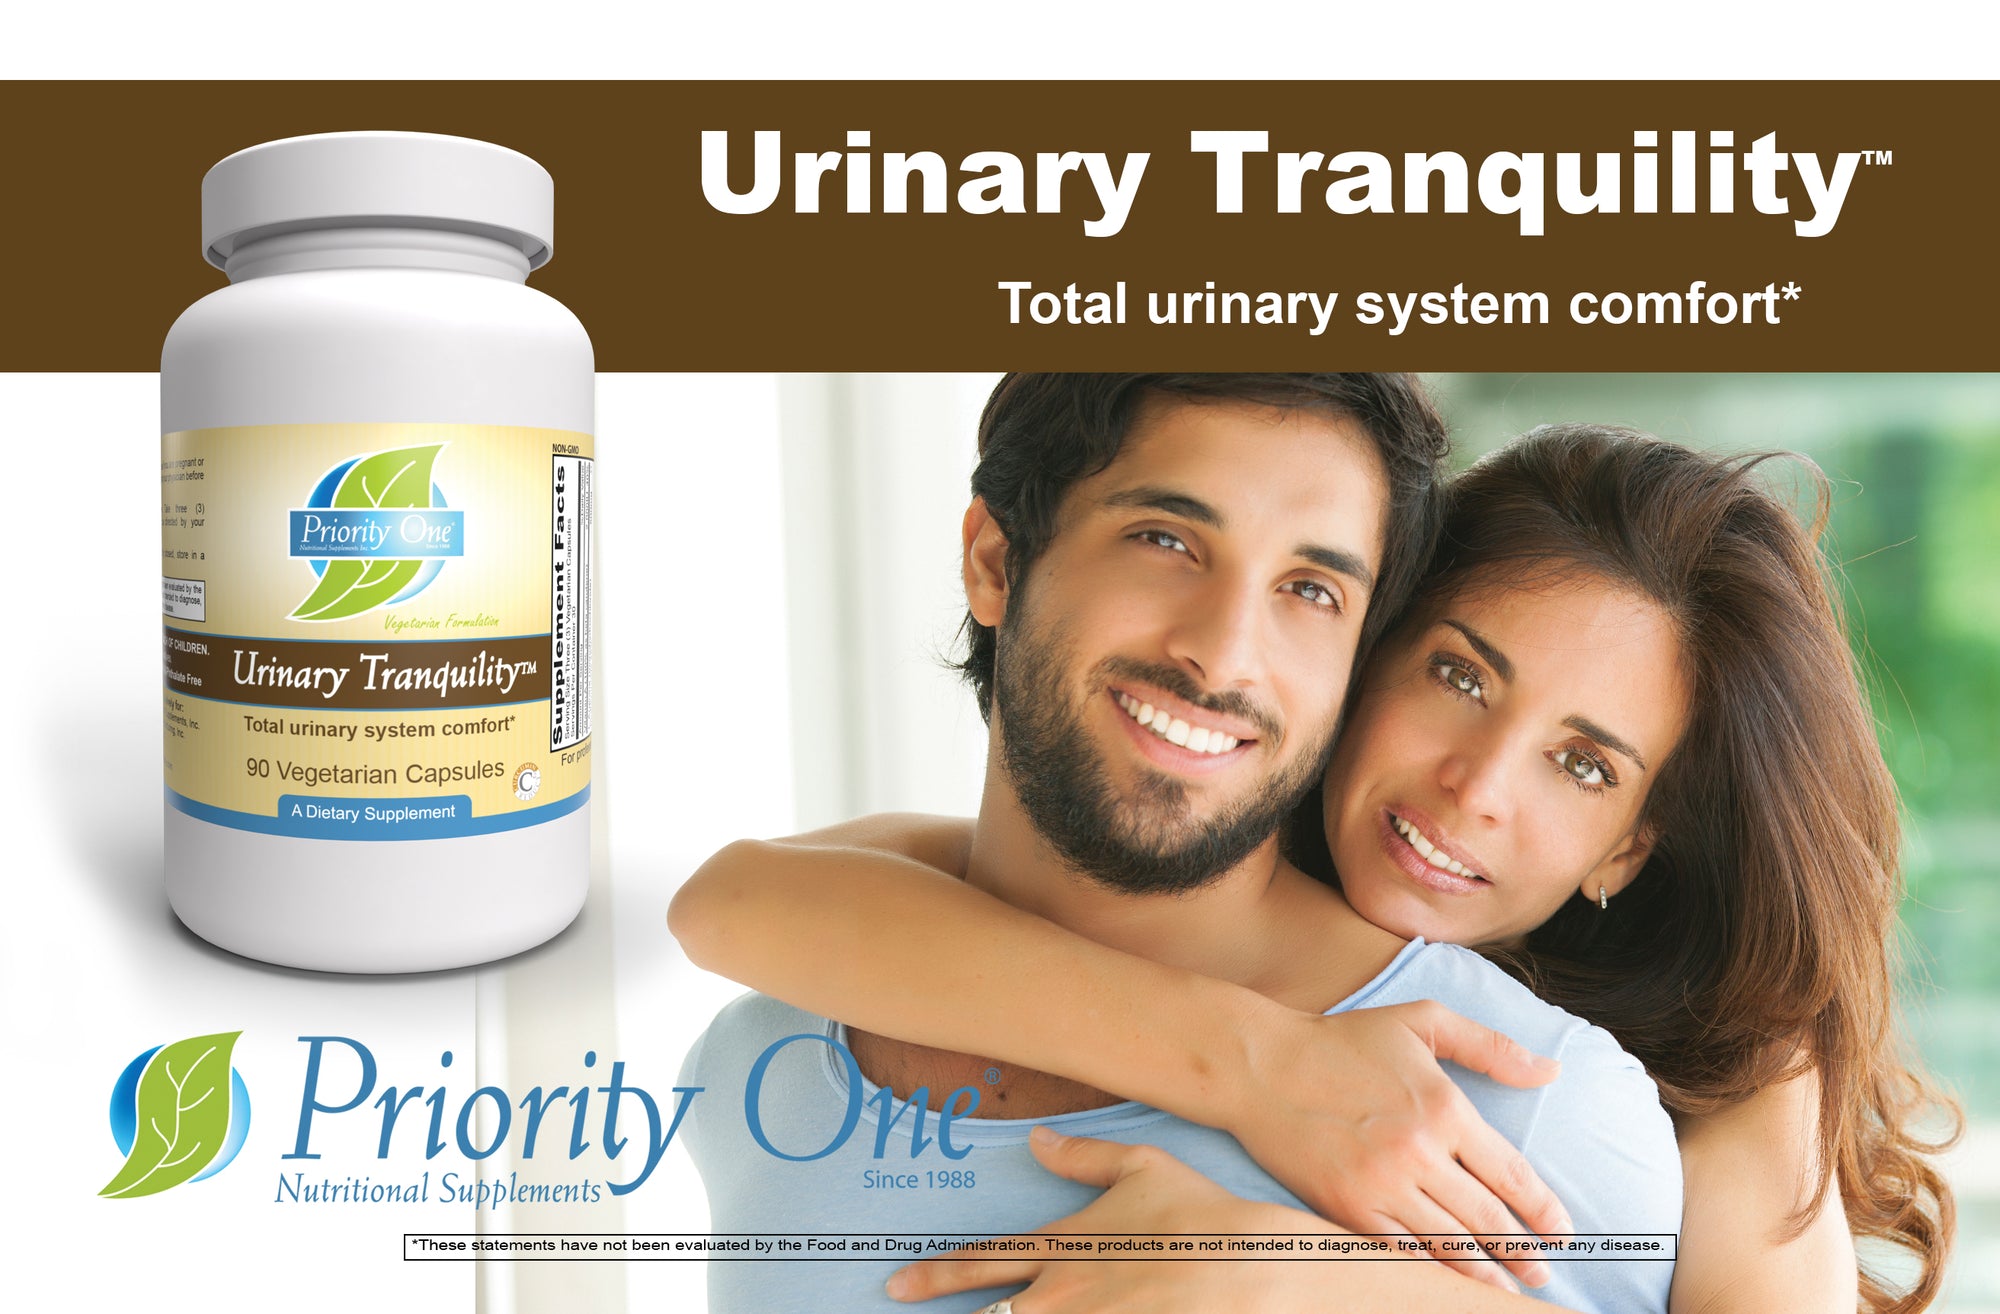 Tranquilidad Urinaria (90 Cápsulas Vegetarianas) Tranquilidad Urinaria, confort total del sistema urinario.*